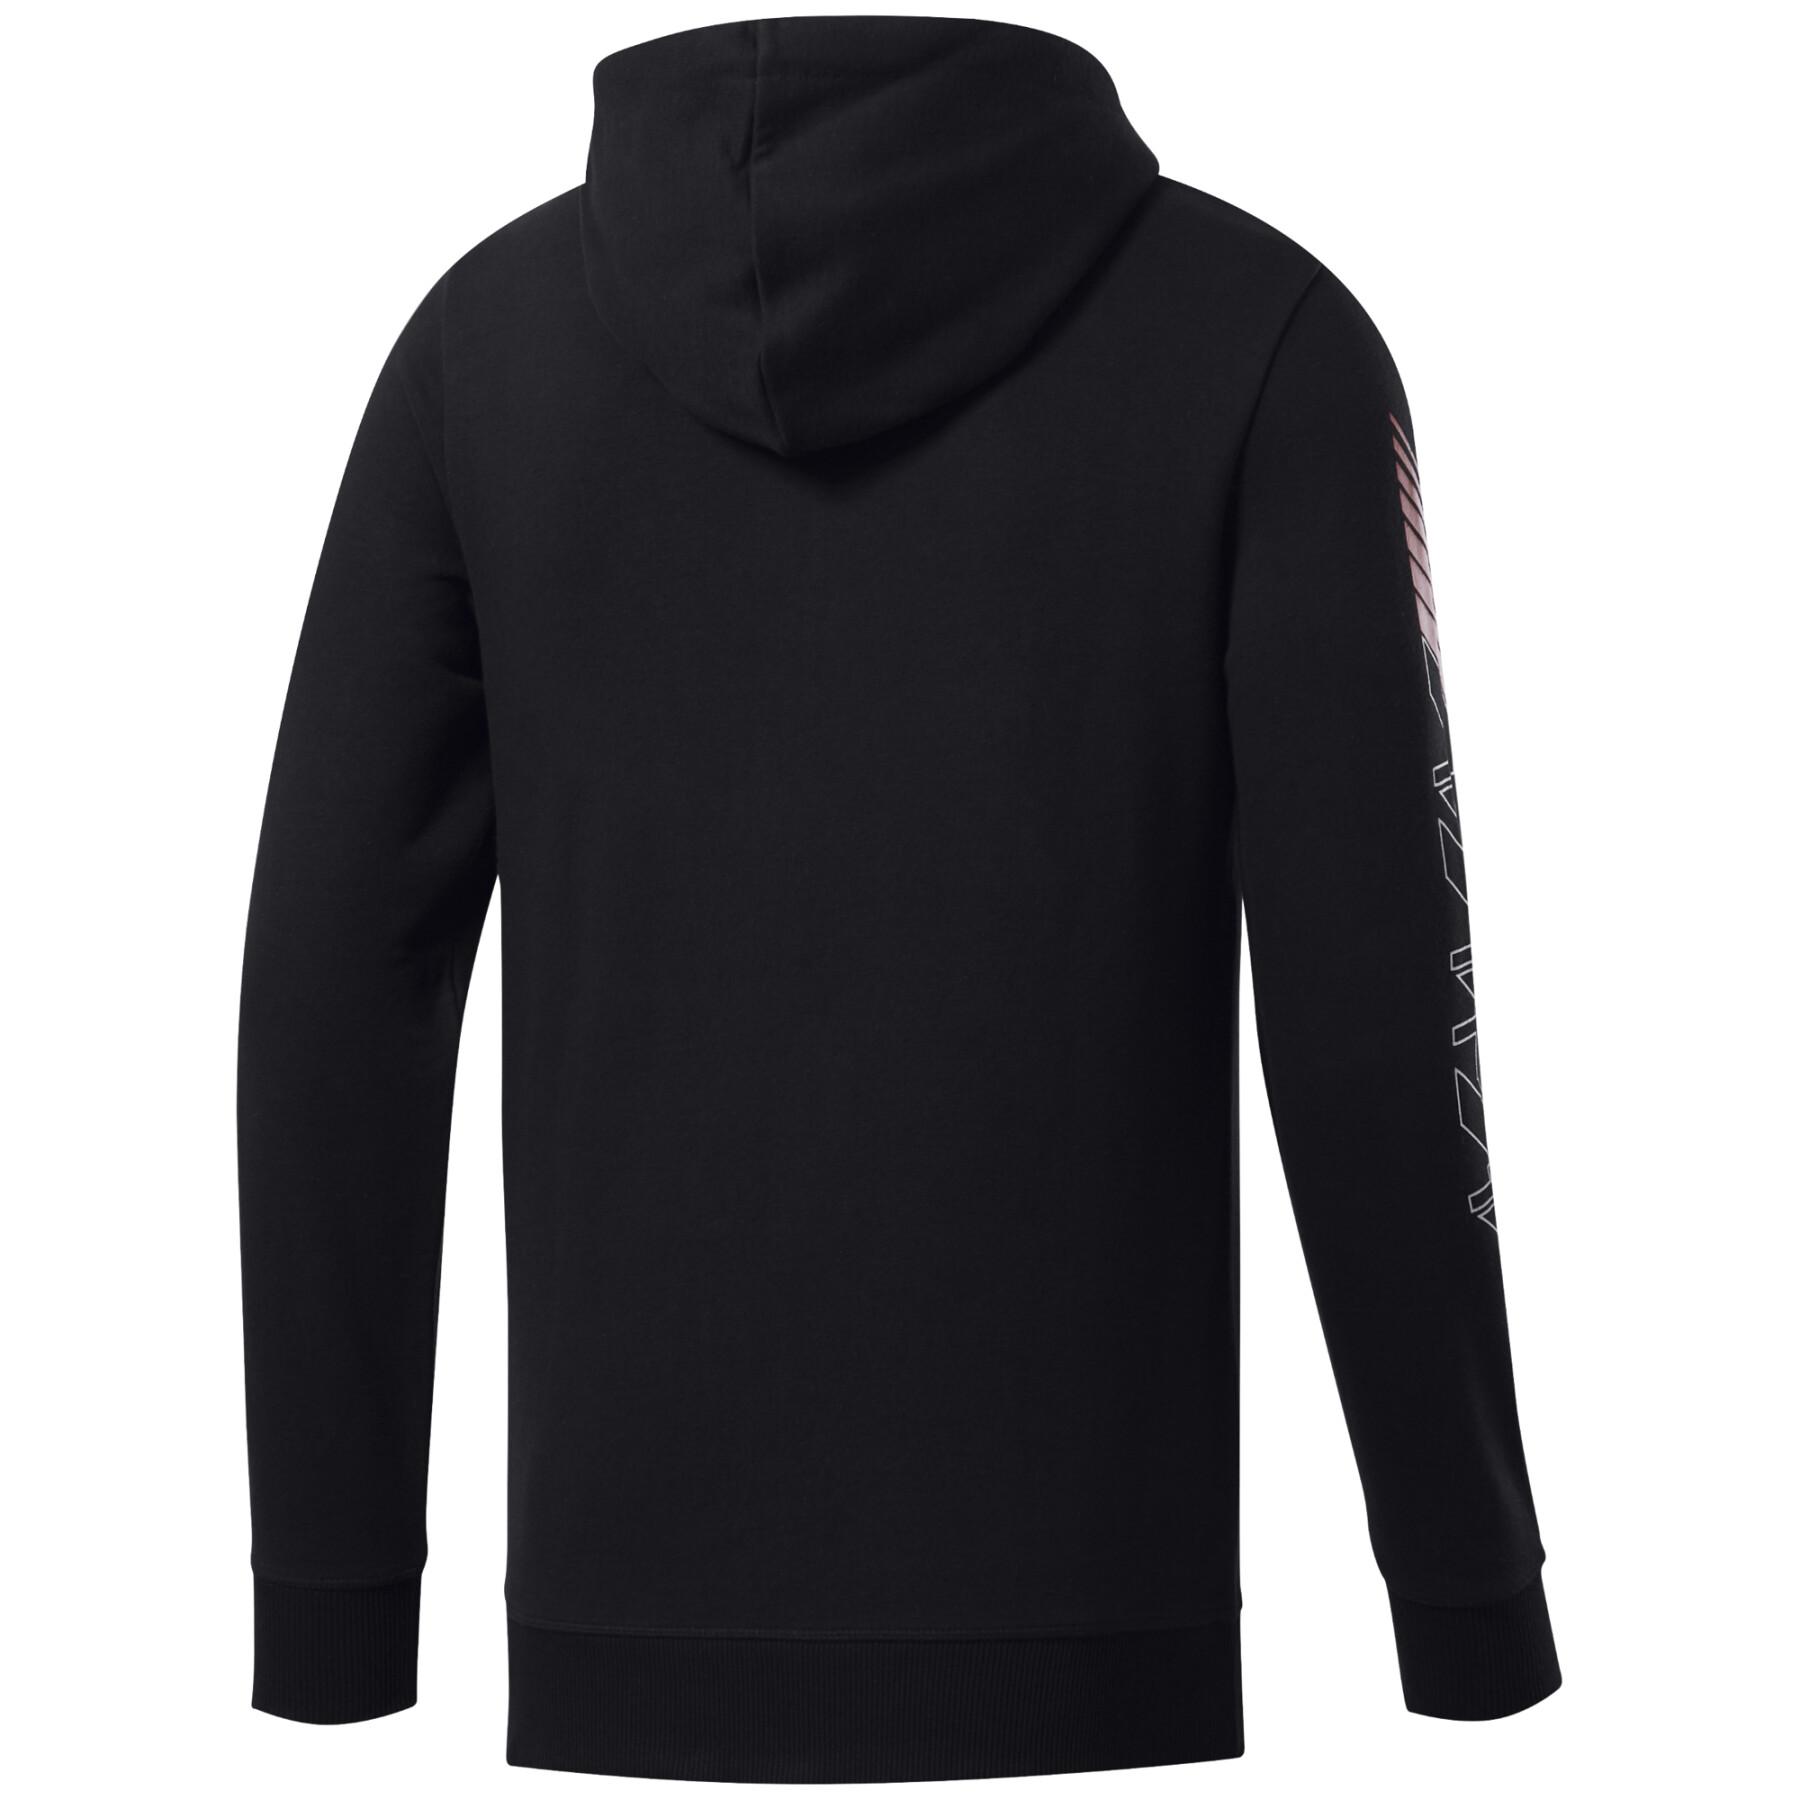 Zip-up hoodie Reebok CrossFit®